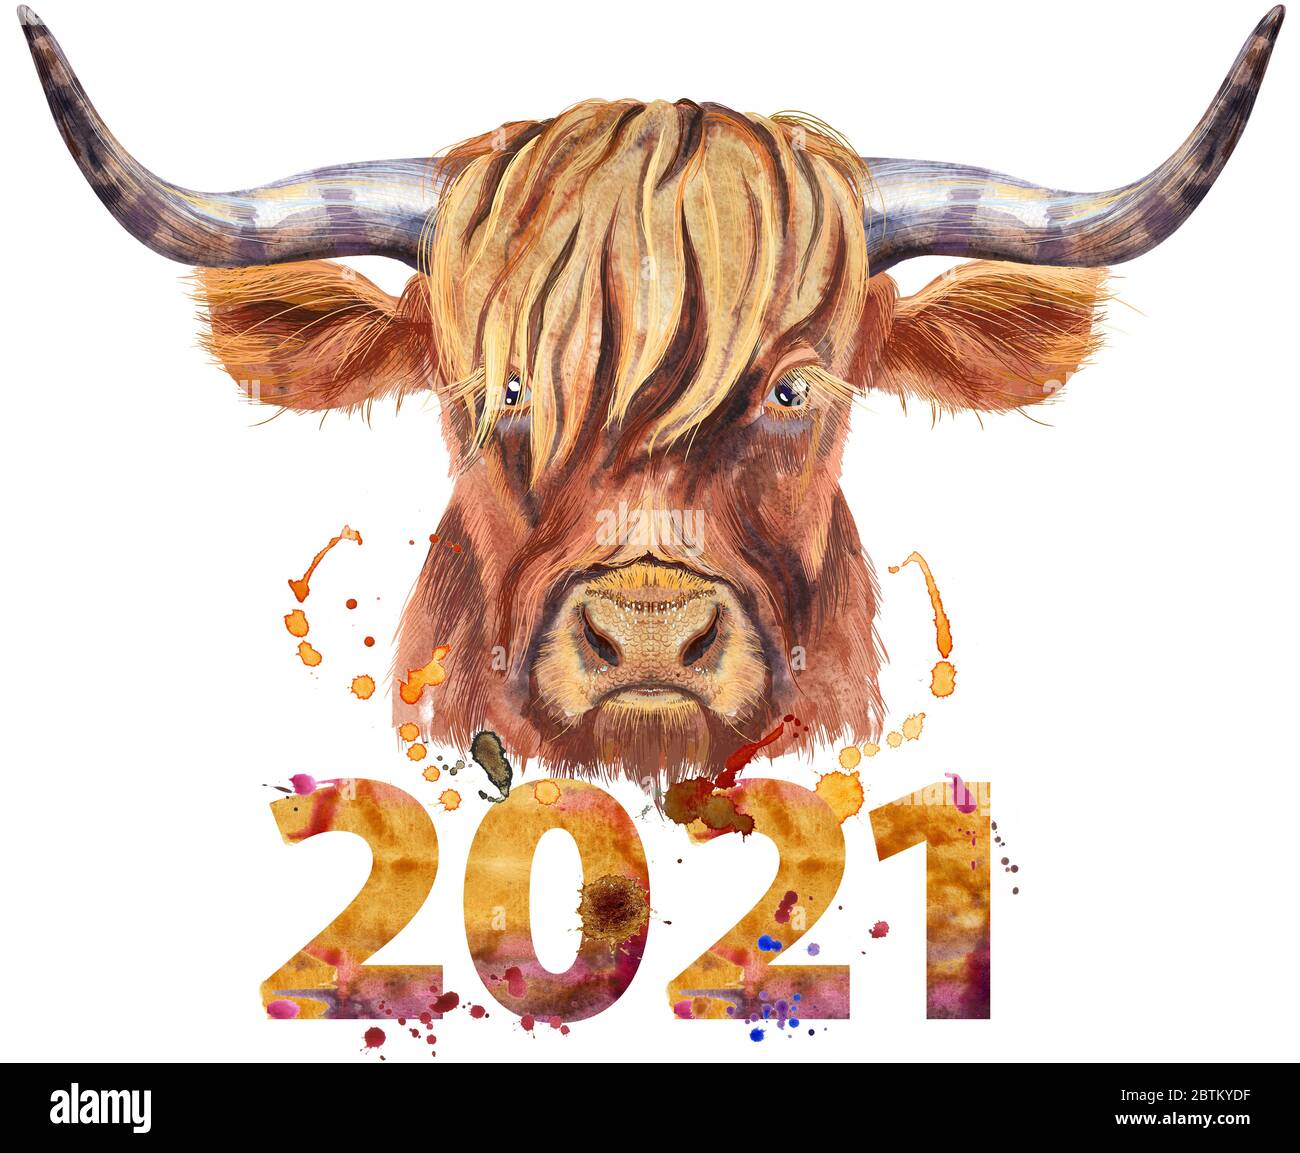 Illustrazione acquerello di un toro marrone a corna lunga Foto Stock